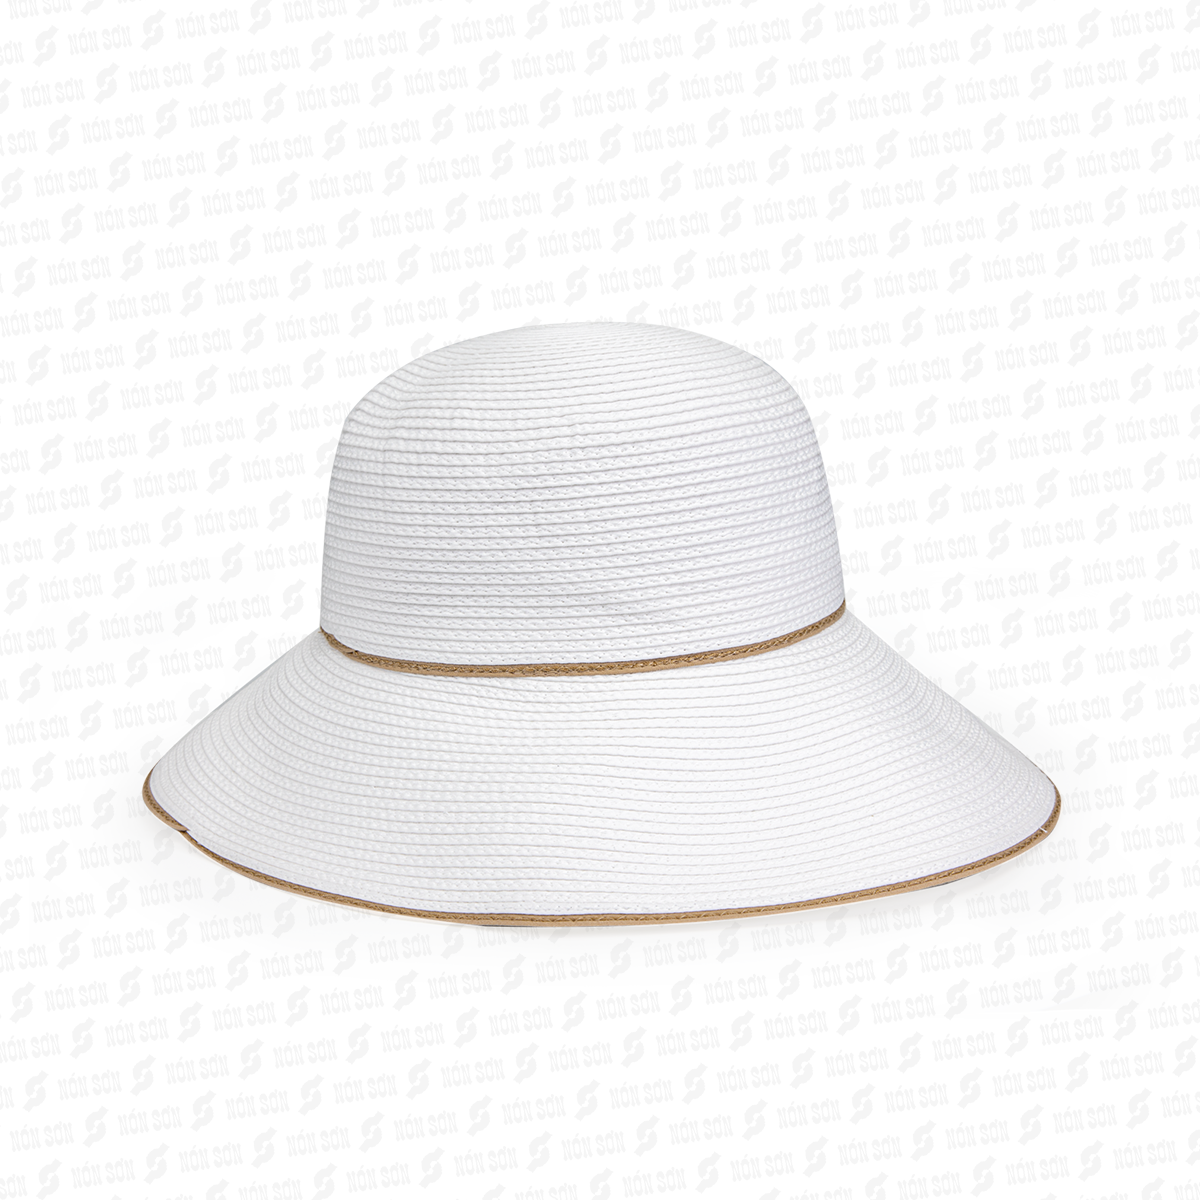 Mũ vành thời trang NÓN SƠN XH001-85-TR2